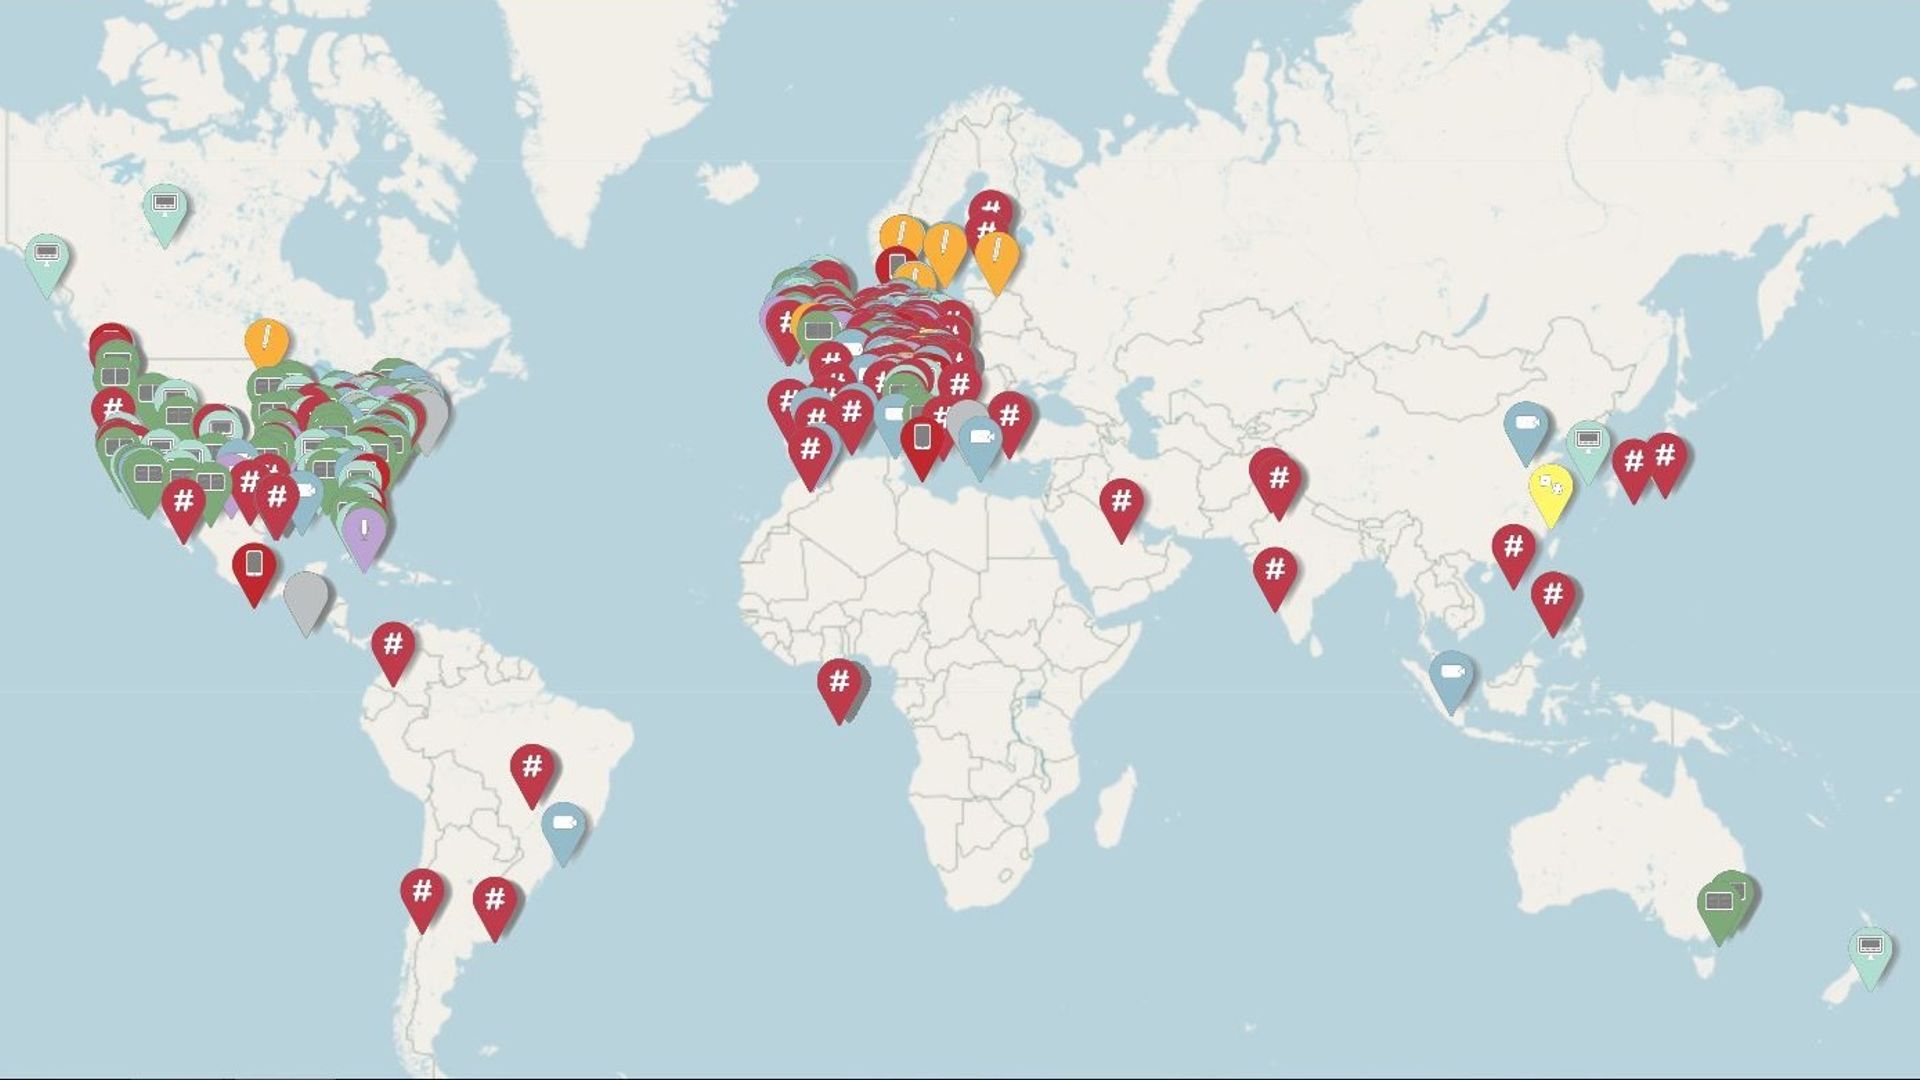 Une carte interactive répertorie toutes les initiatives digitales lancées par les musées du monde entier face à la pandémie.